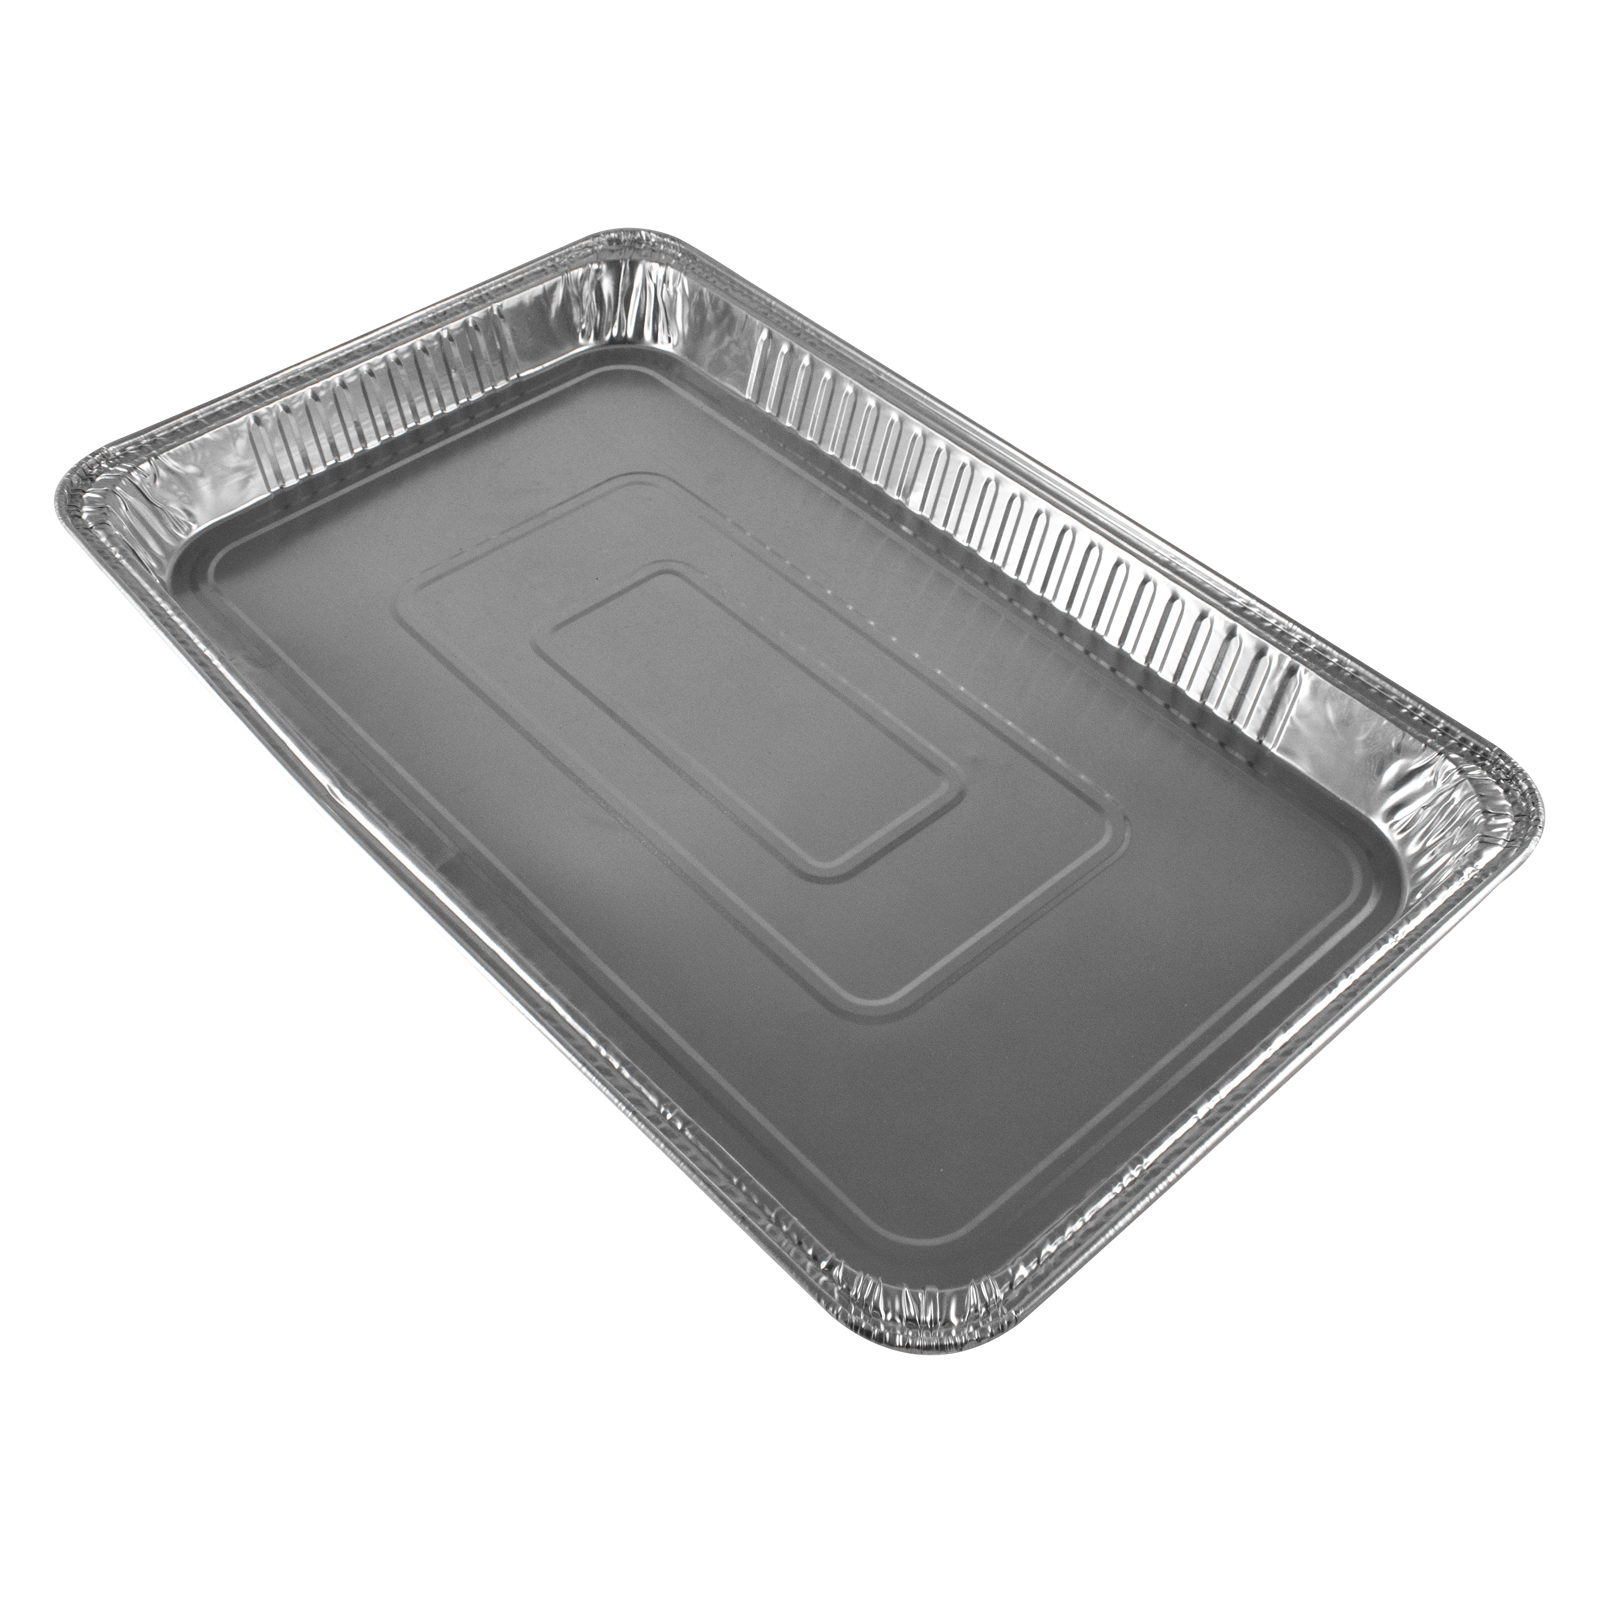 Alu Schale 1/1 Gastronorm, 5200 ml, 52,7 x 32,6 x 3,7 cm, 100 Stk/Ktn